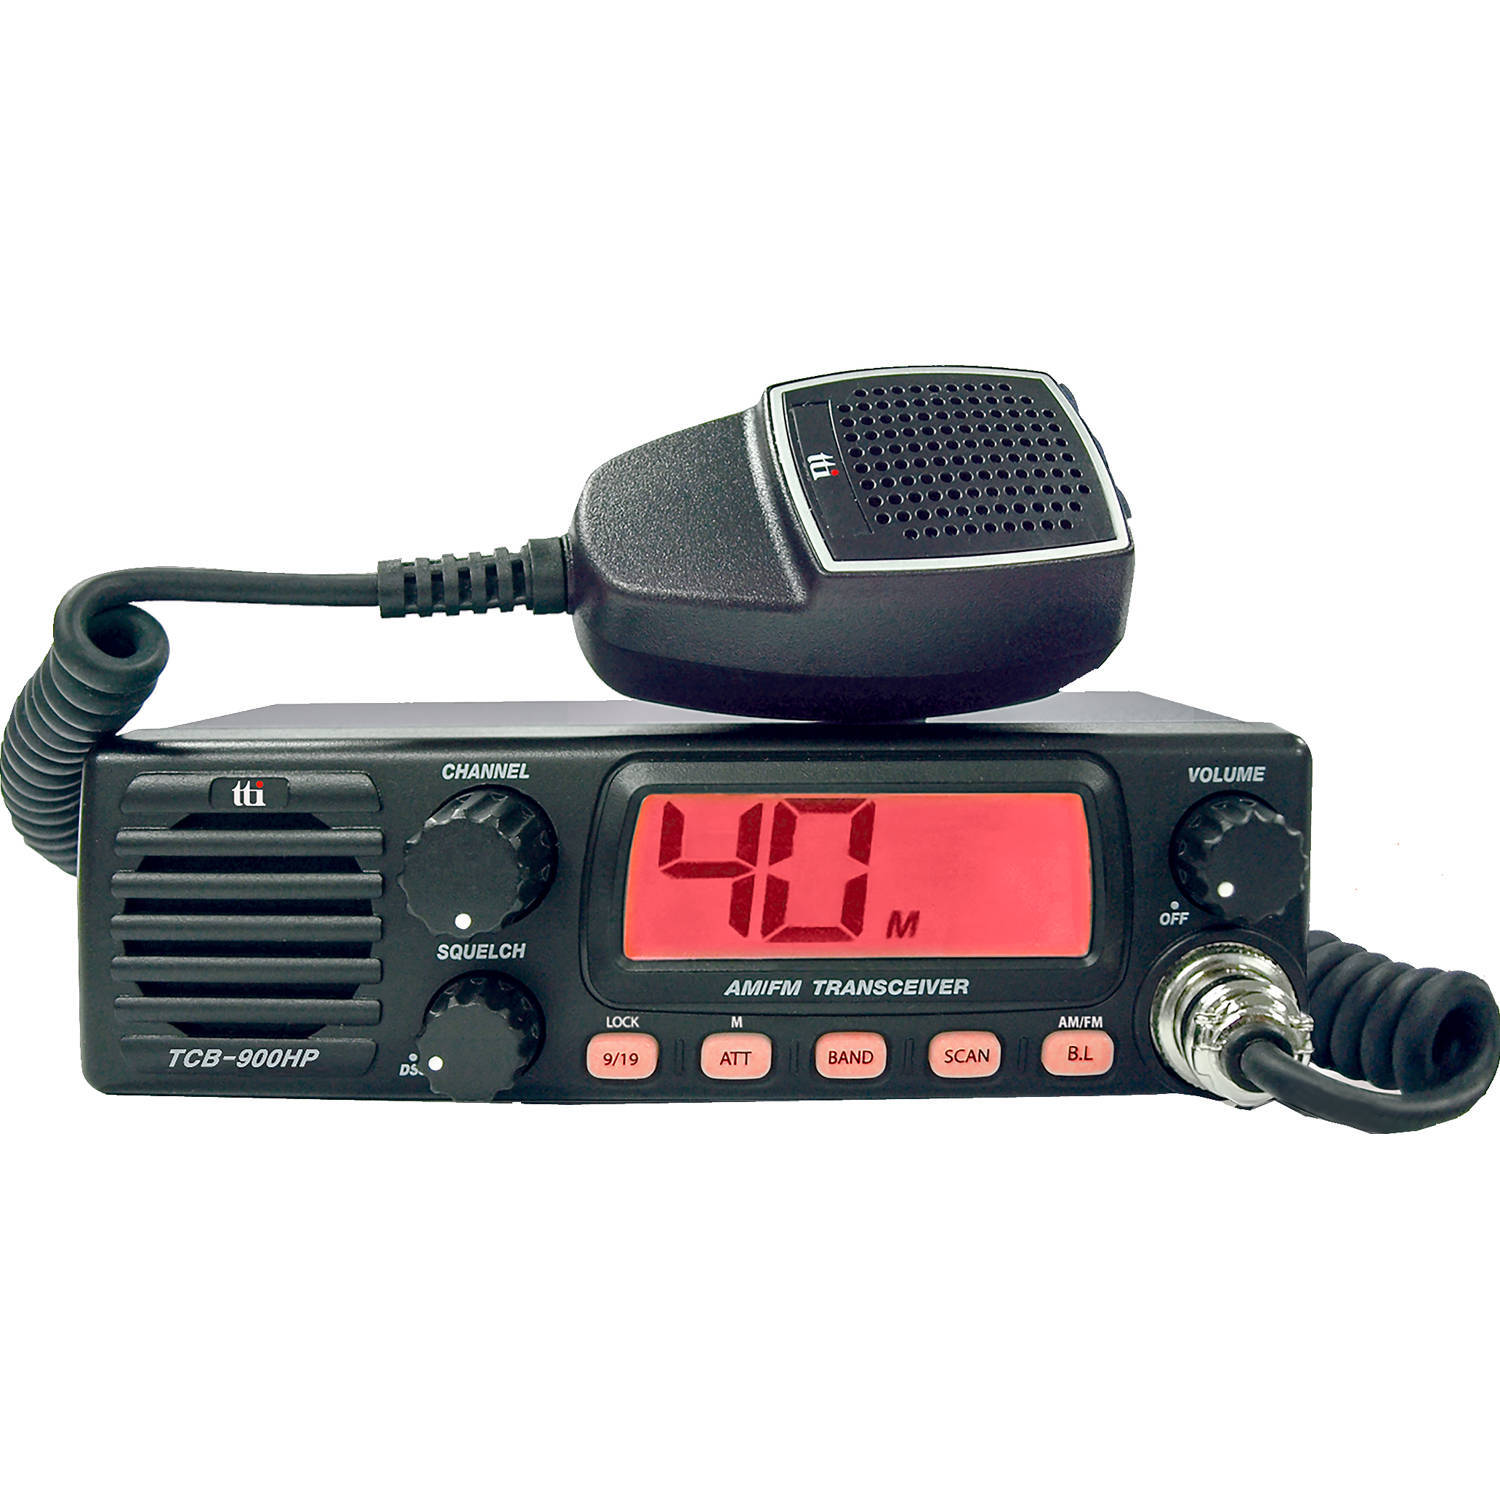 Tti TCB-900HP - AM/FM - CB radio - 12/24 Volt - 27 MHz